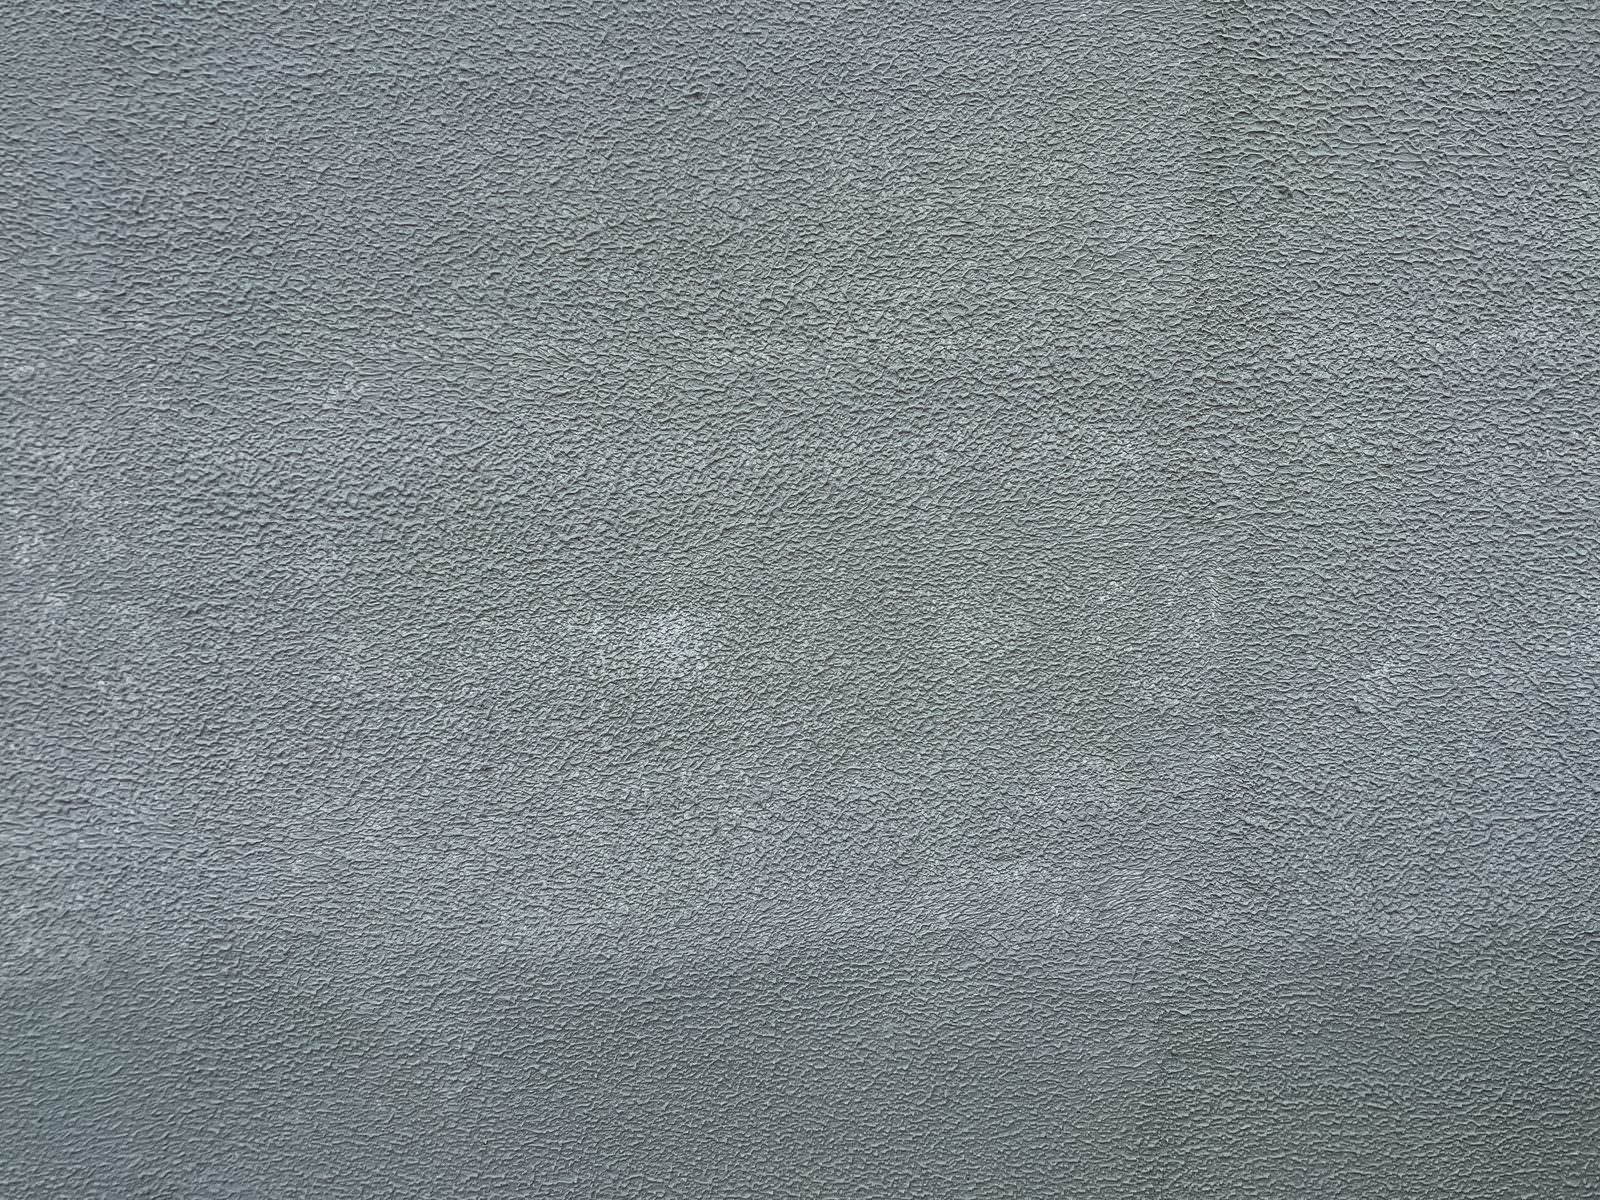 「モルタルで仕上げた壁のテクスチャー」の写真